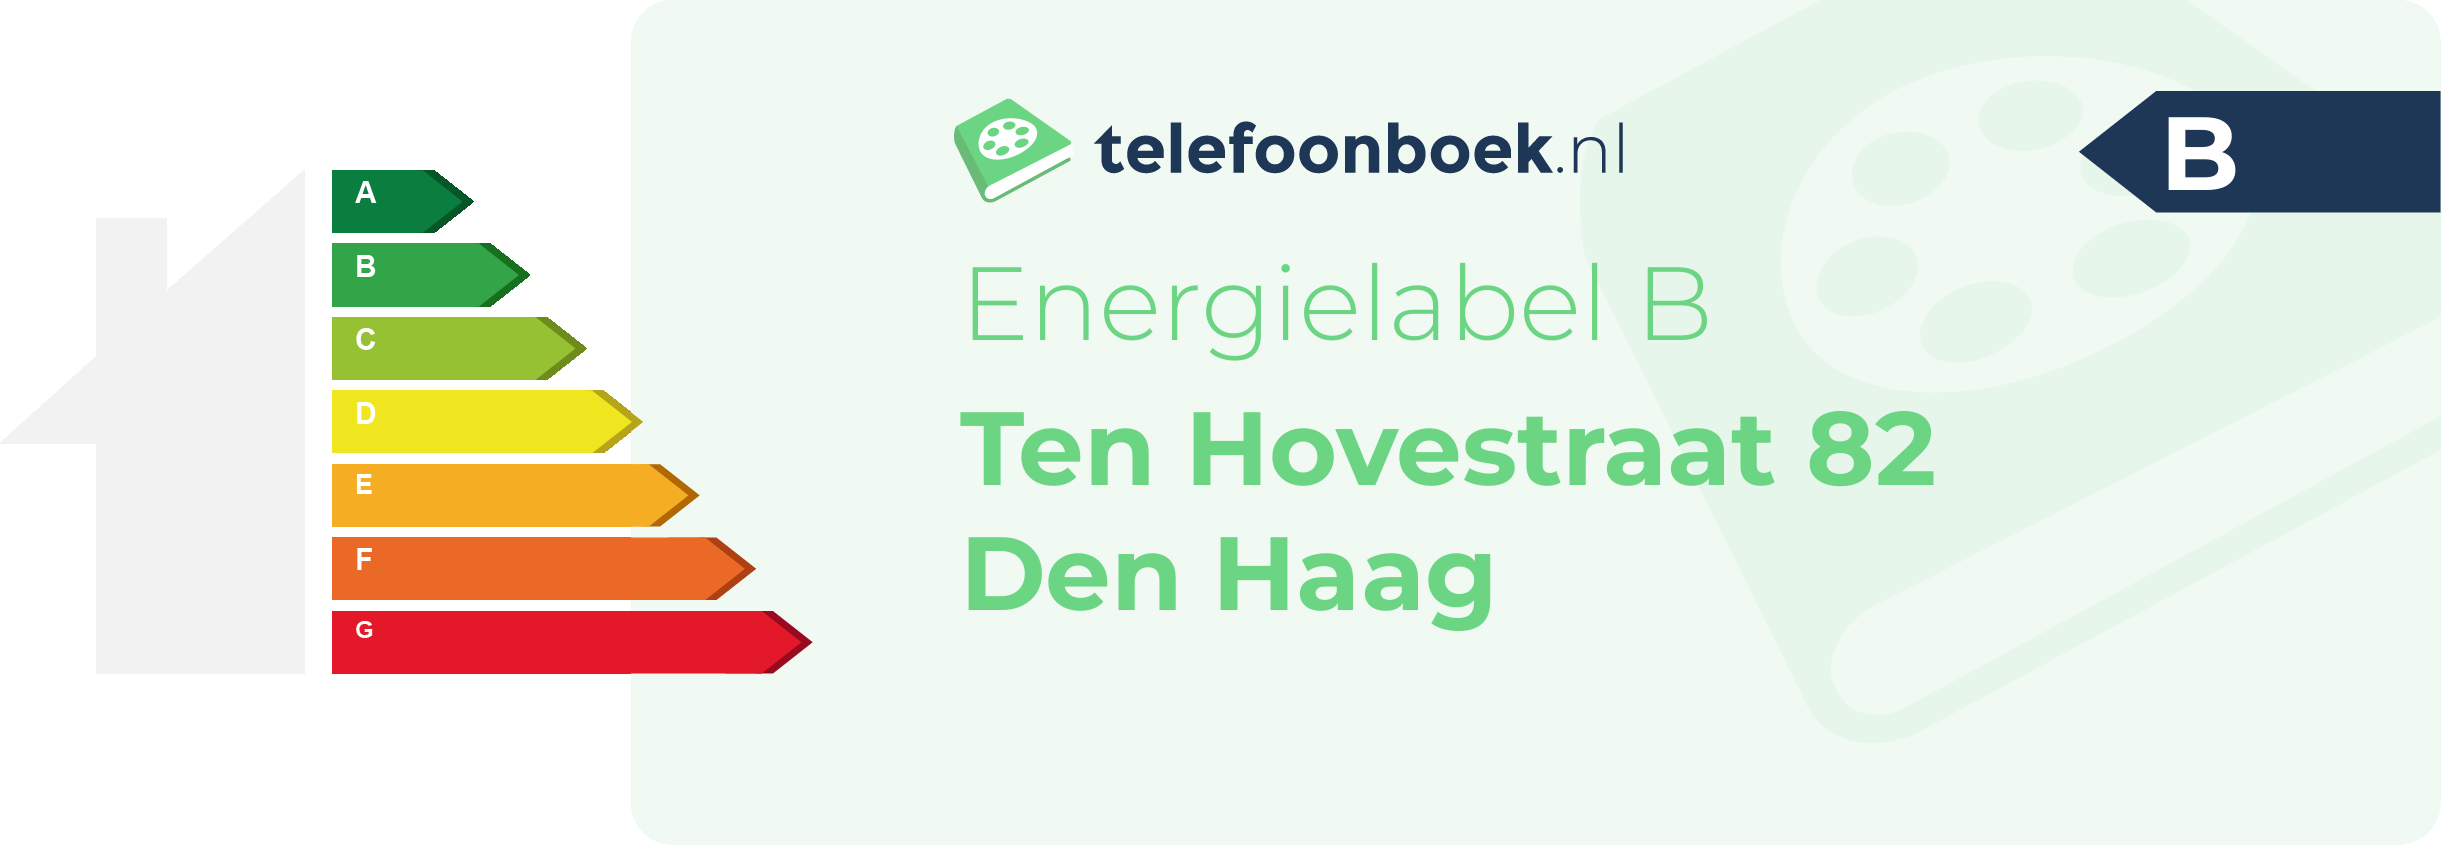 Energielabel Ten Hovestraat 82 Den Haag